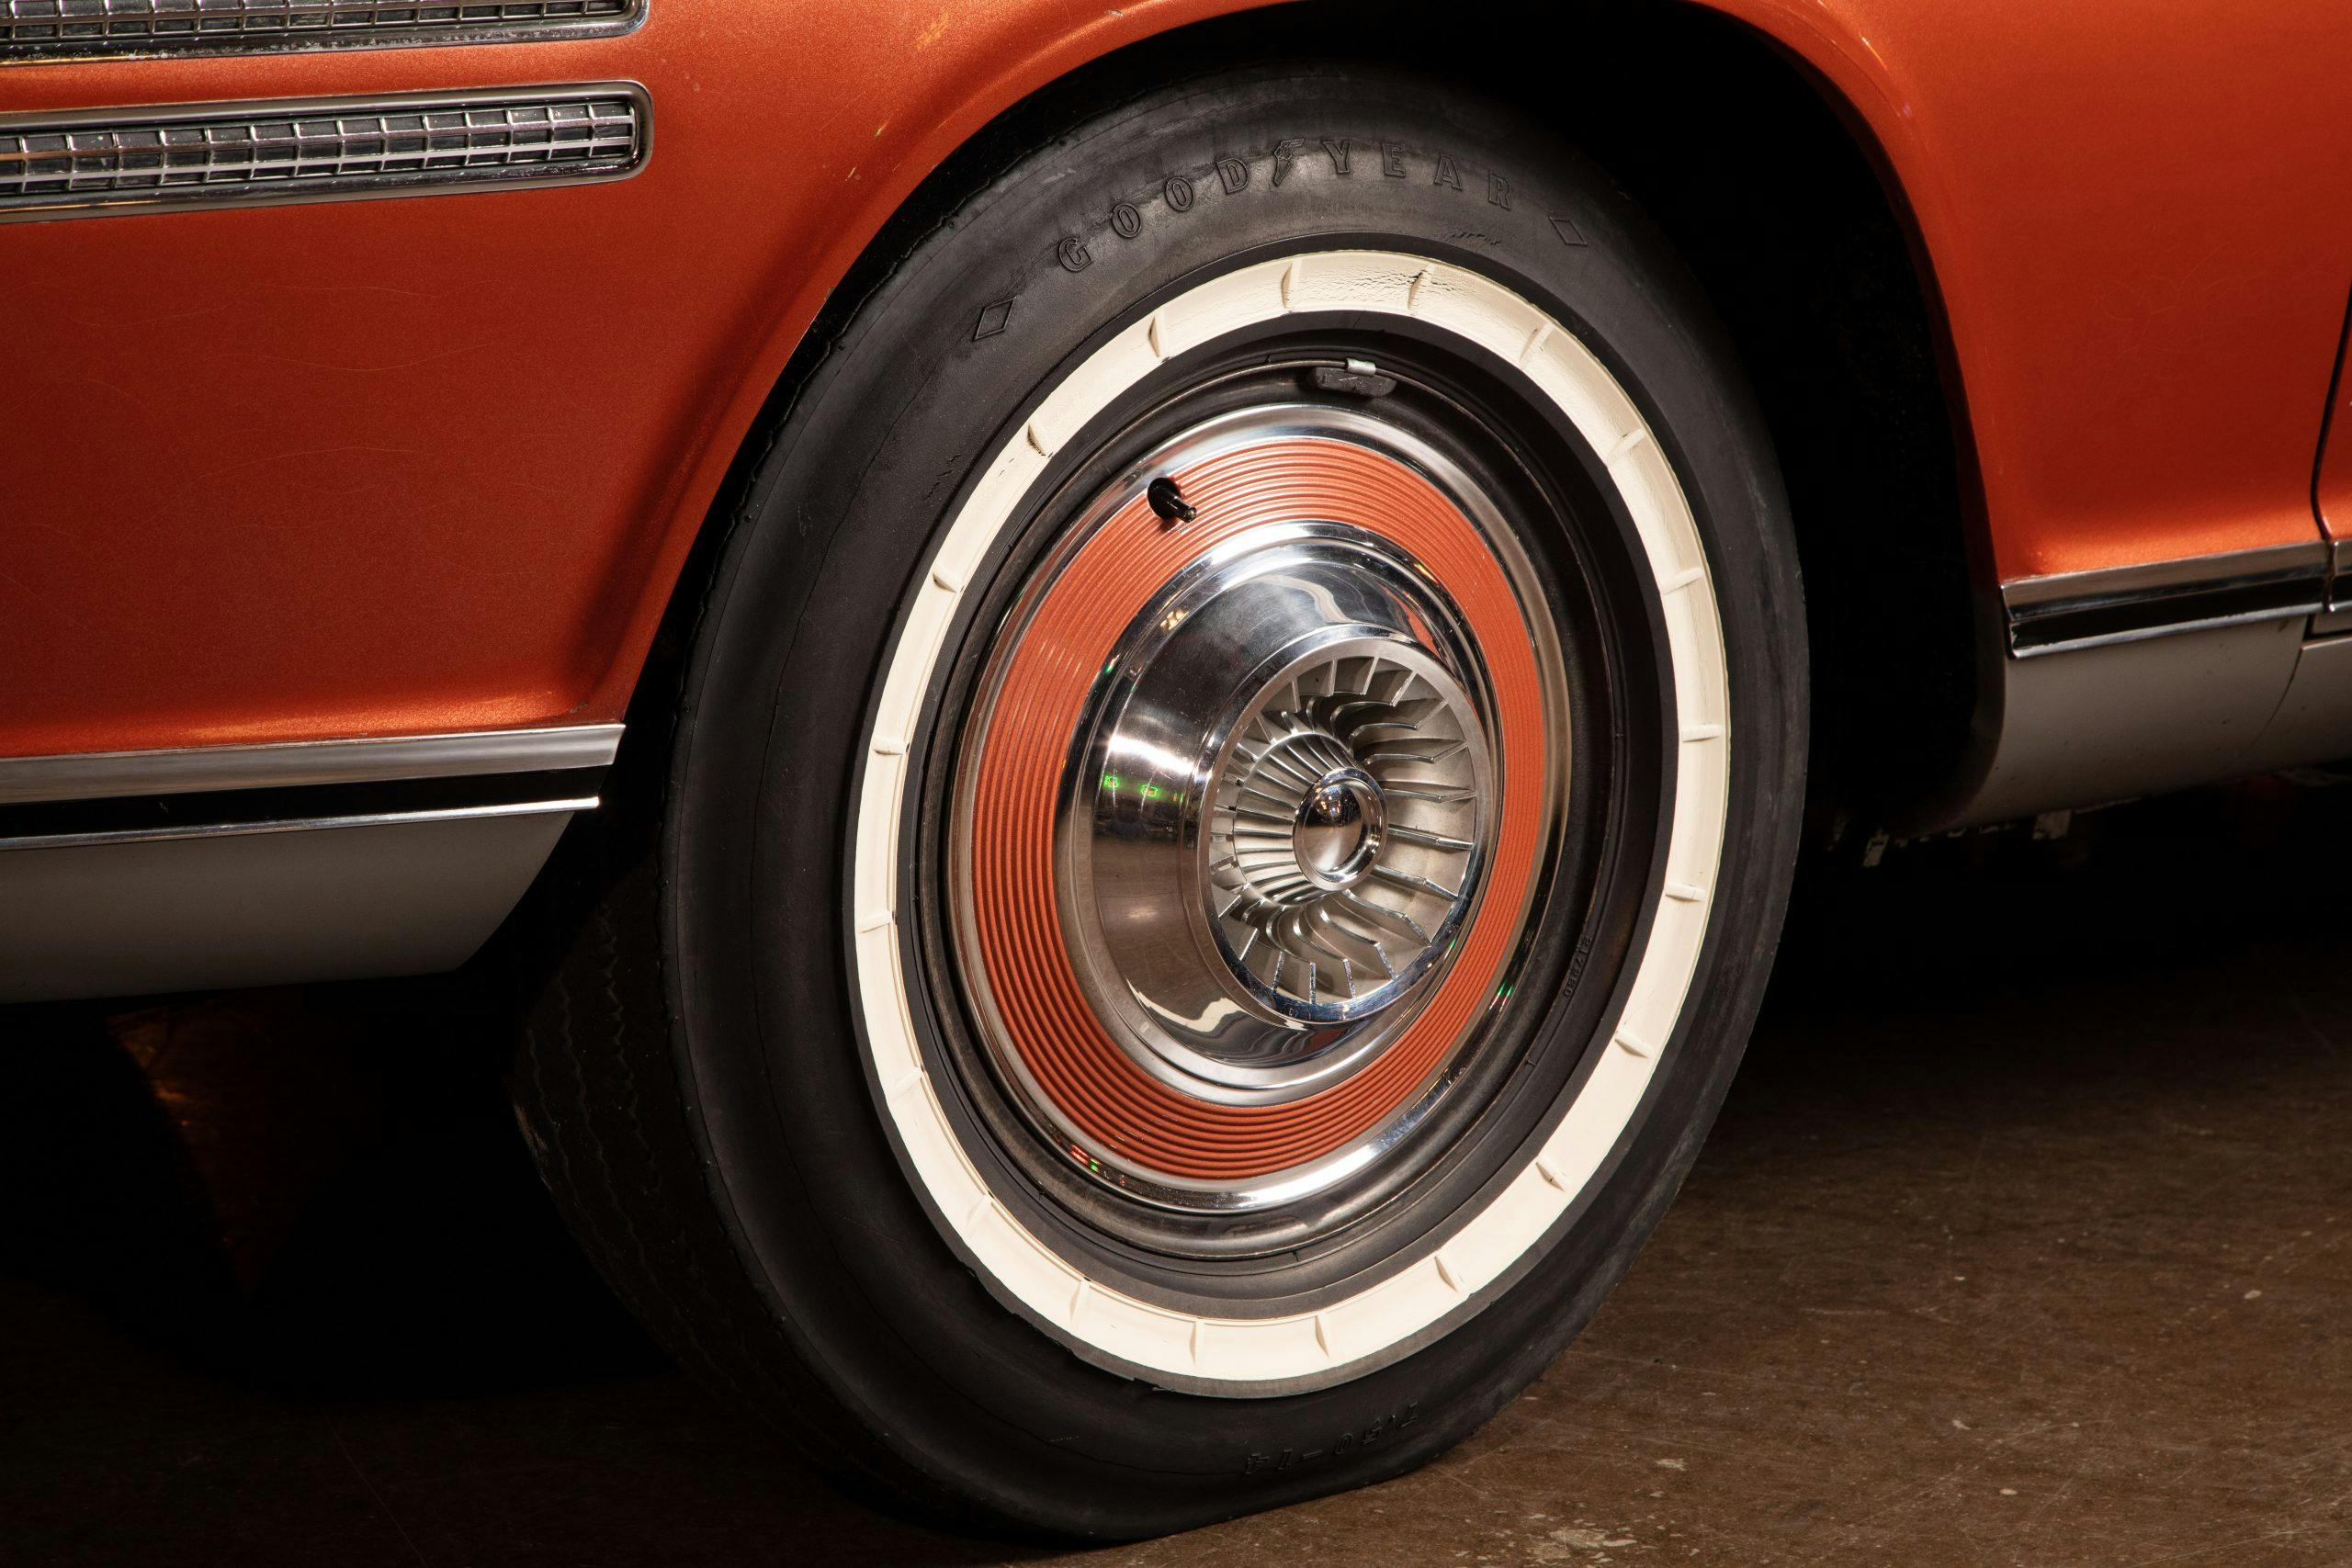 Chrysler Turbine car front wheel tire